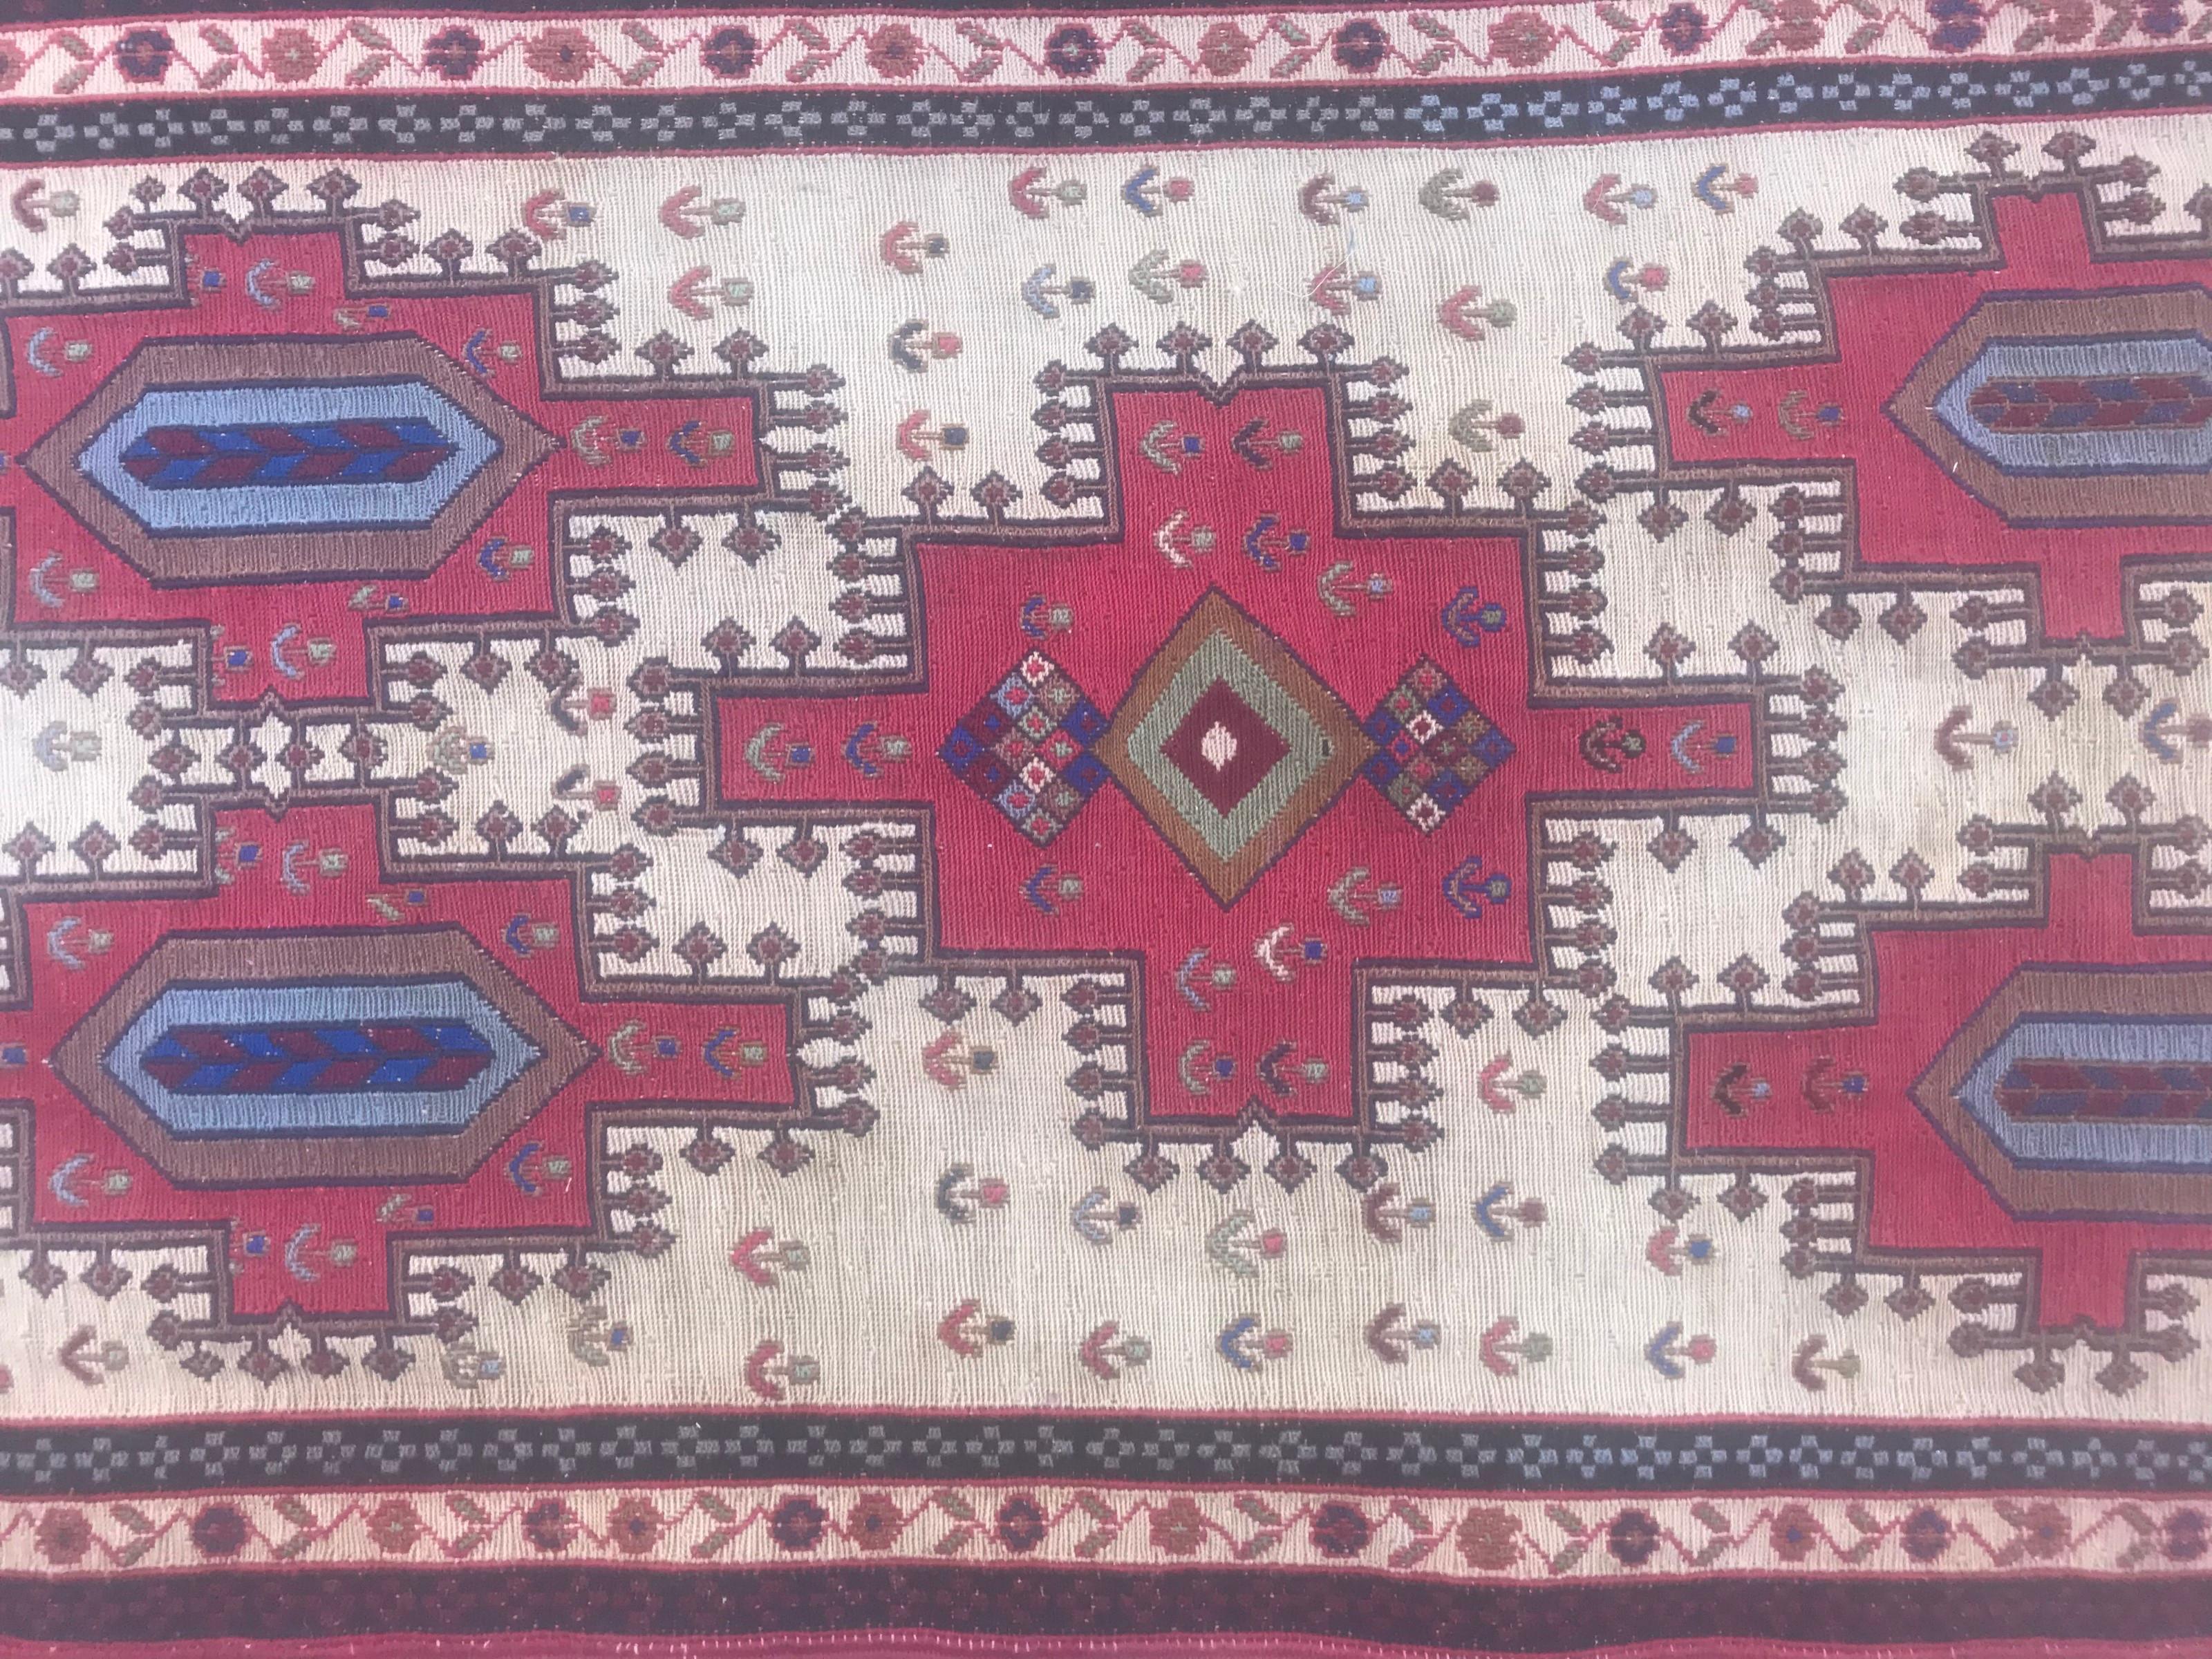 Découvrez l'élégance intemporelle de notre exquis tapis Shahsavand de la fin du XXe siècle. Orné d'un captivant motif géométrique tribal sur un champ blanc immaculé, ce chef-d'œuvre présente des teintes vibrantes de rouge, de bleu, de vert, d'orange